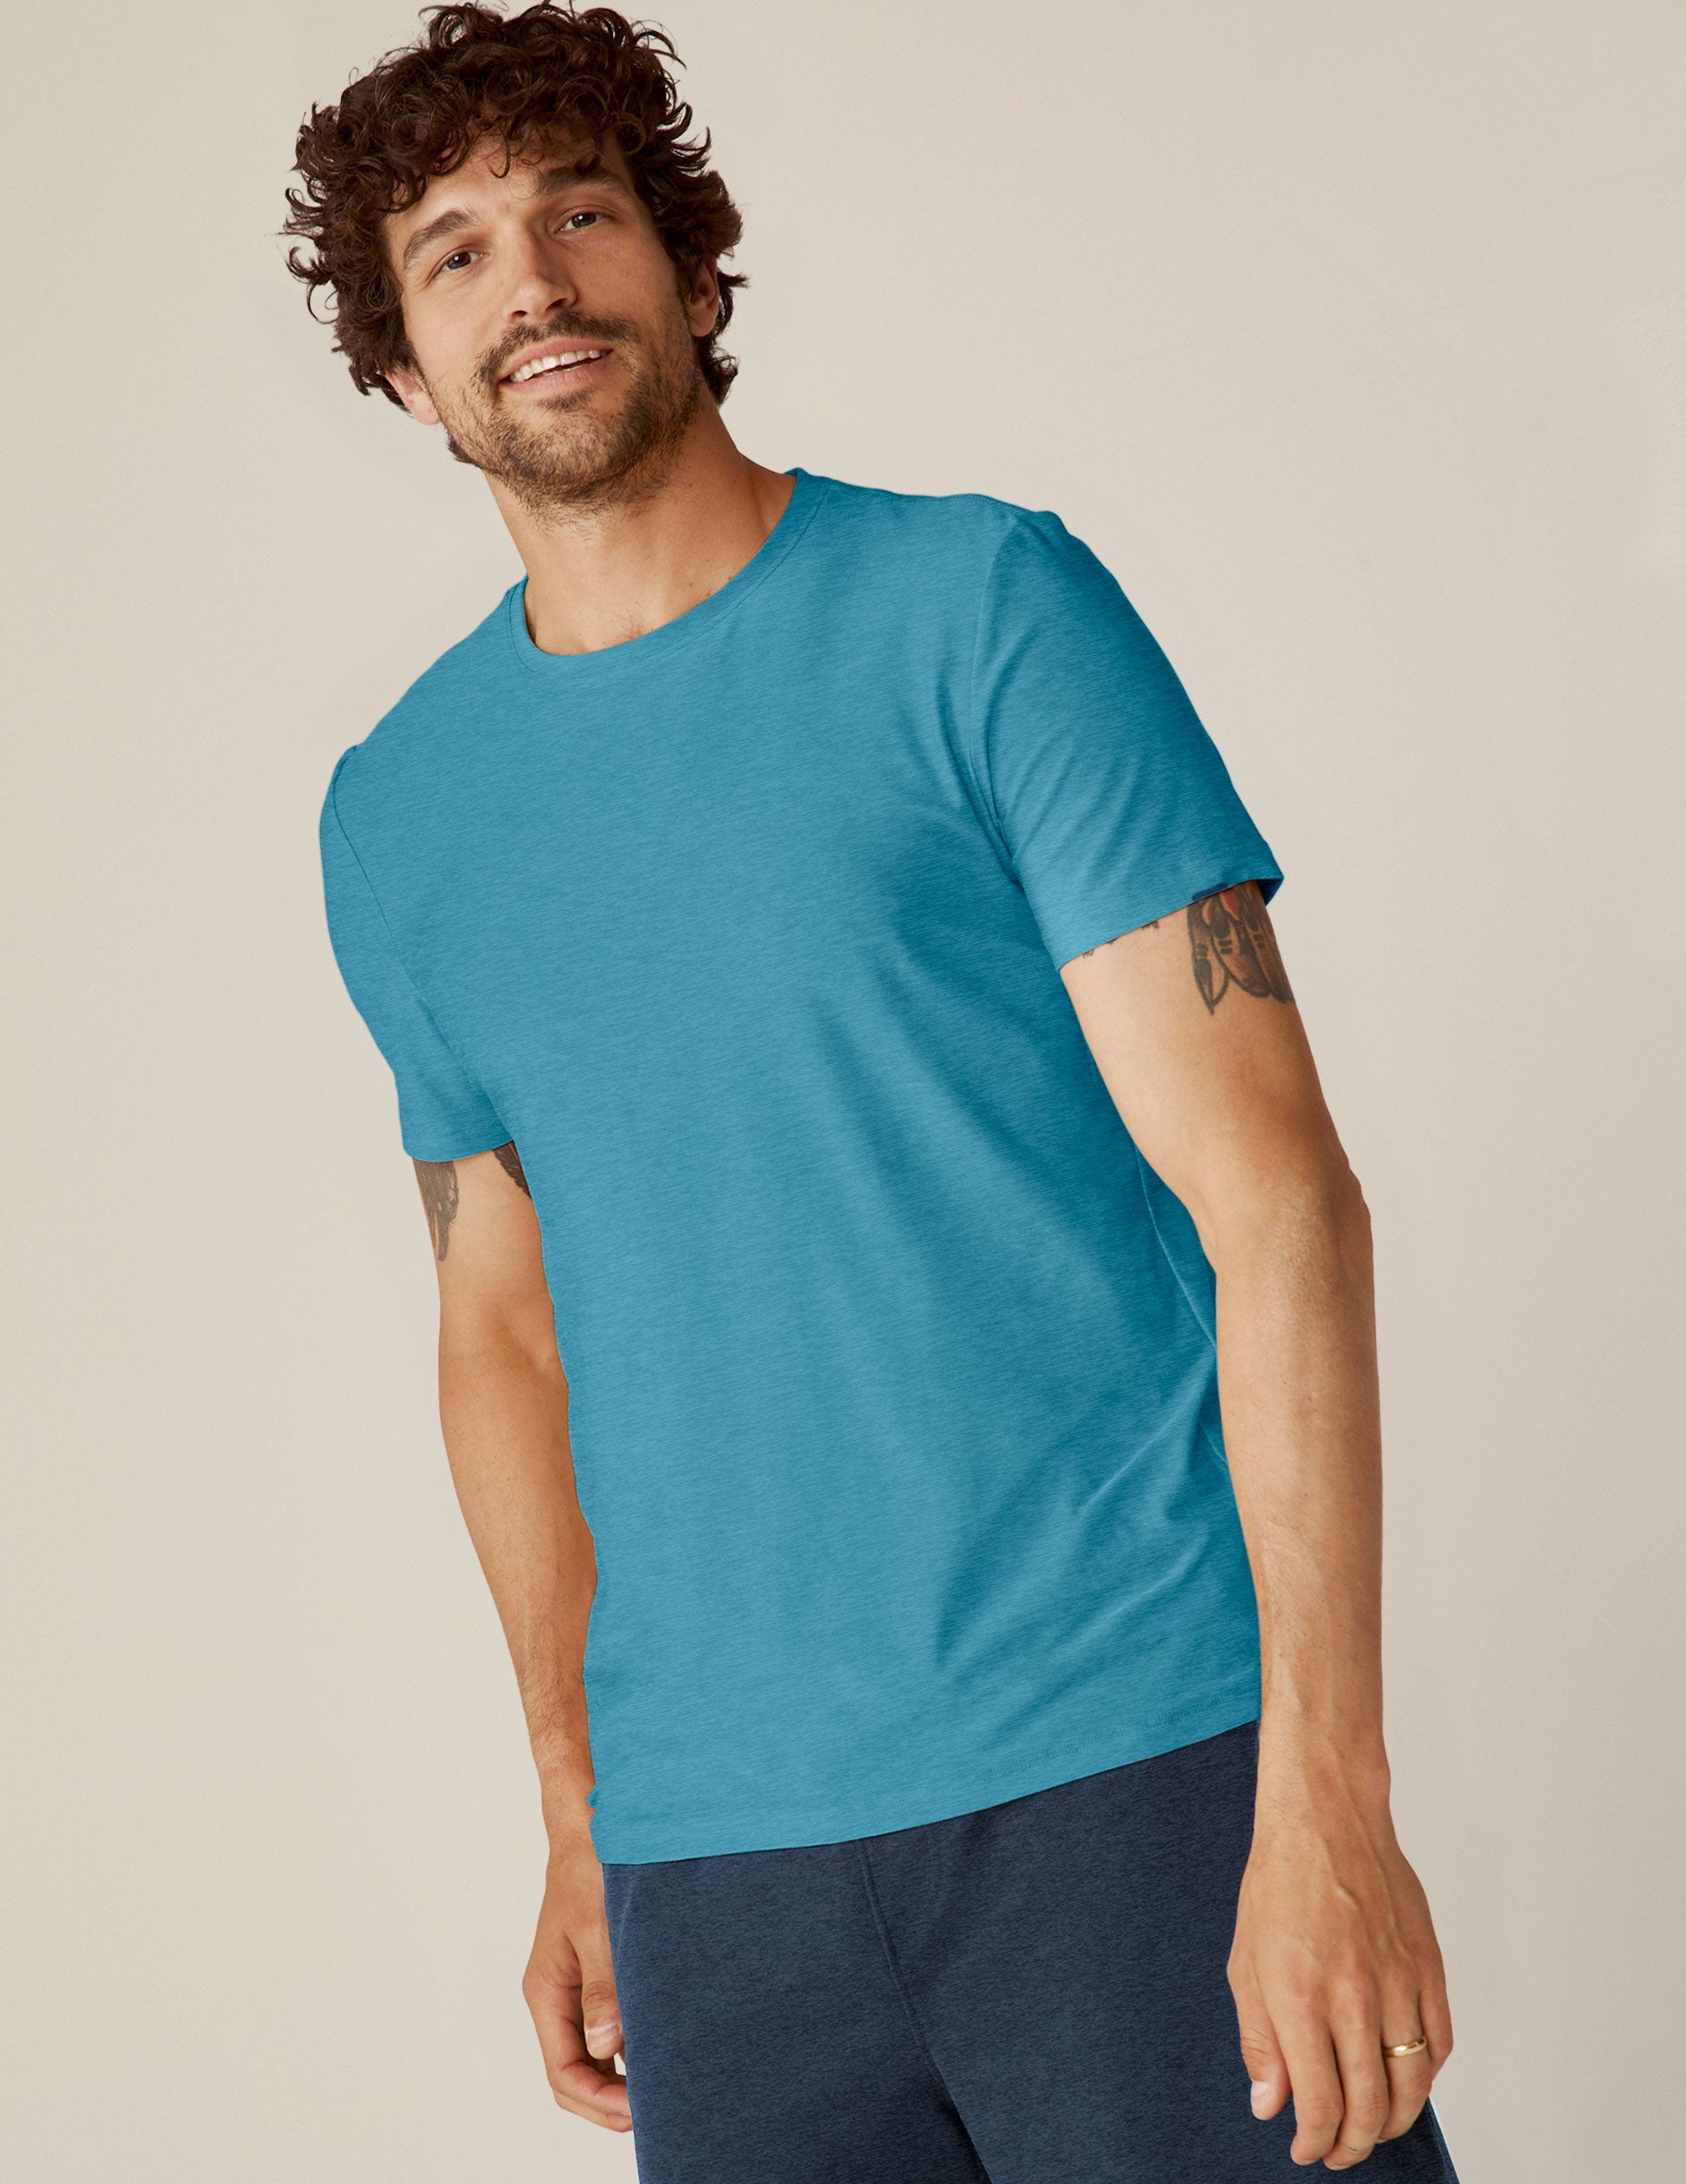 blue short sleeve men's t-shirt. 